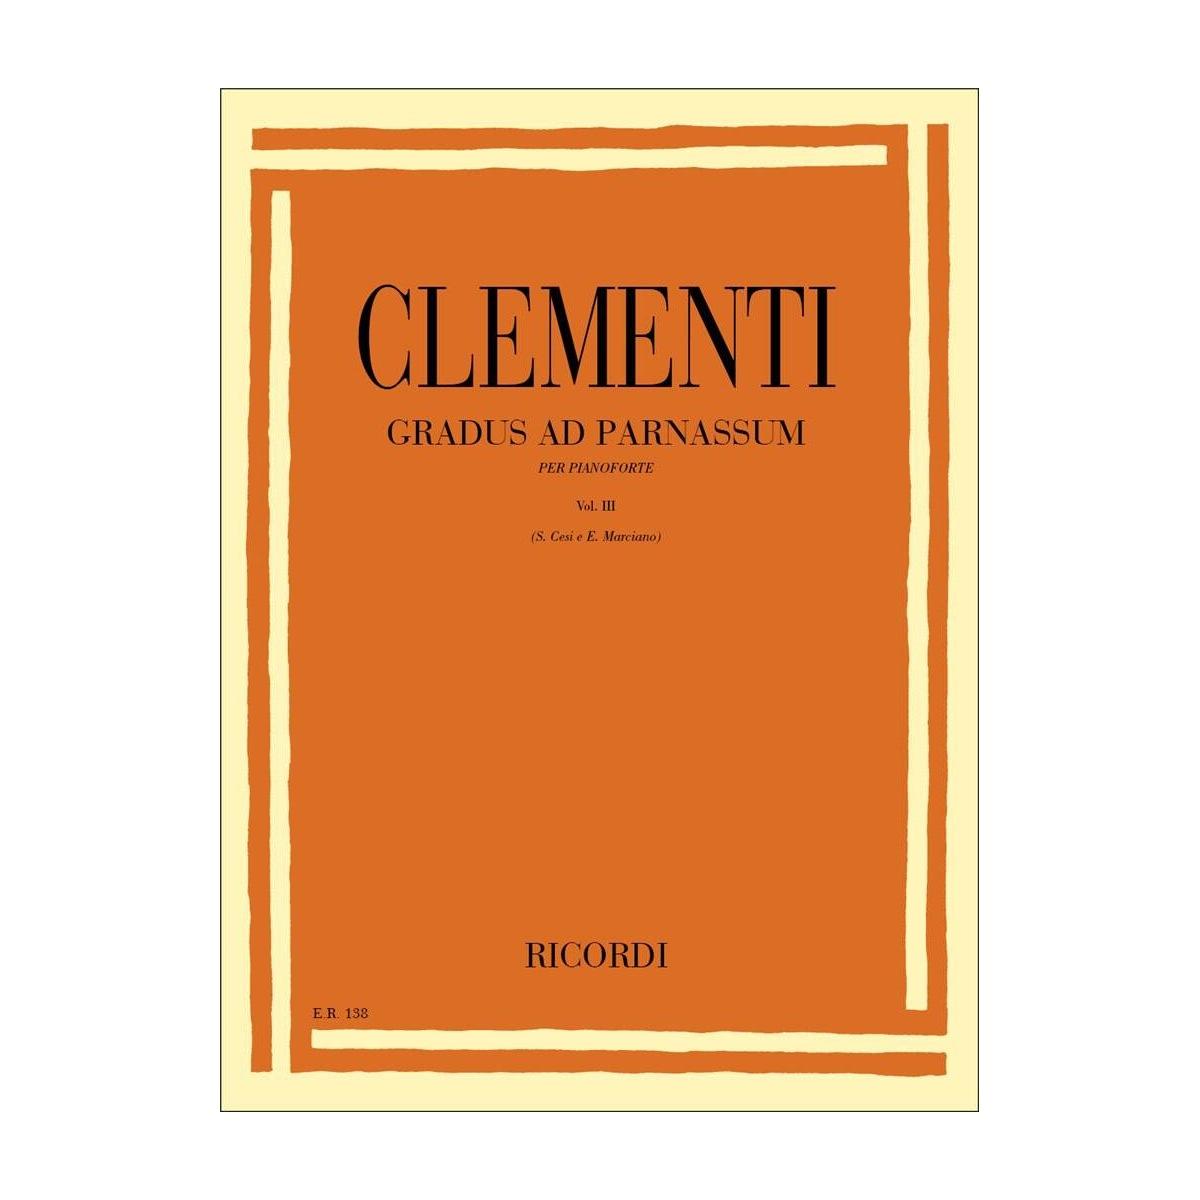 Clementi gradus ad parnassum. volume iii